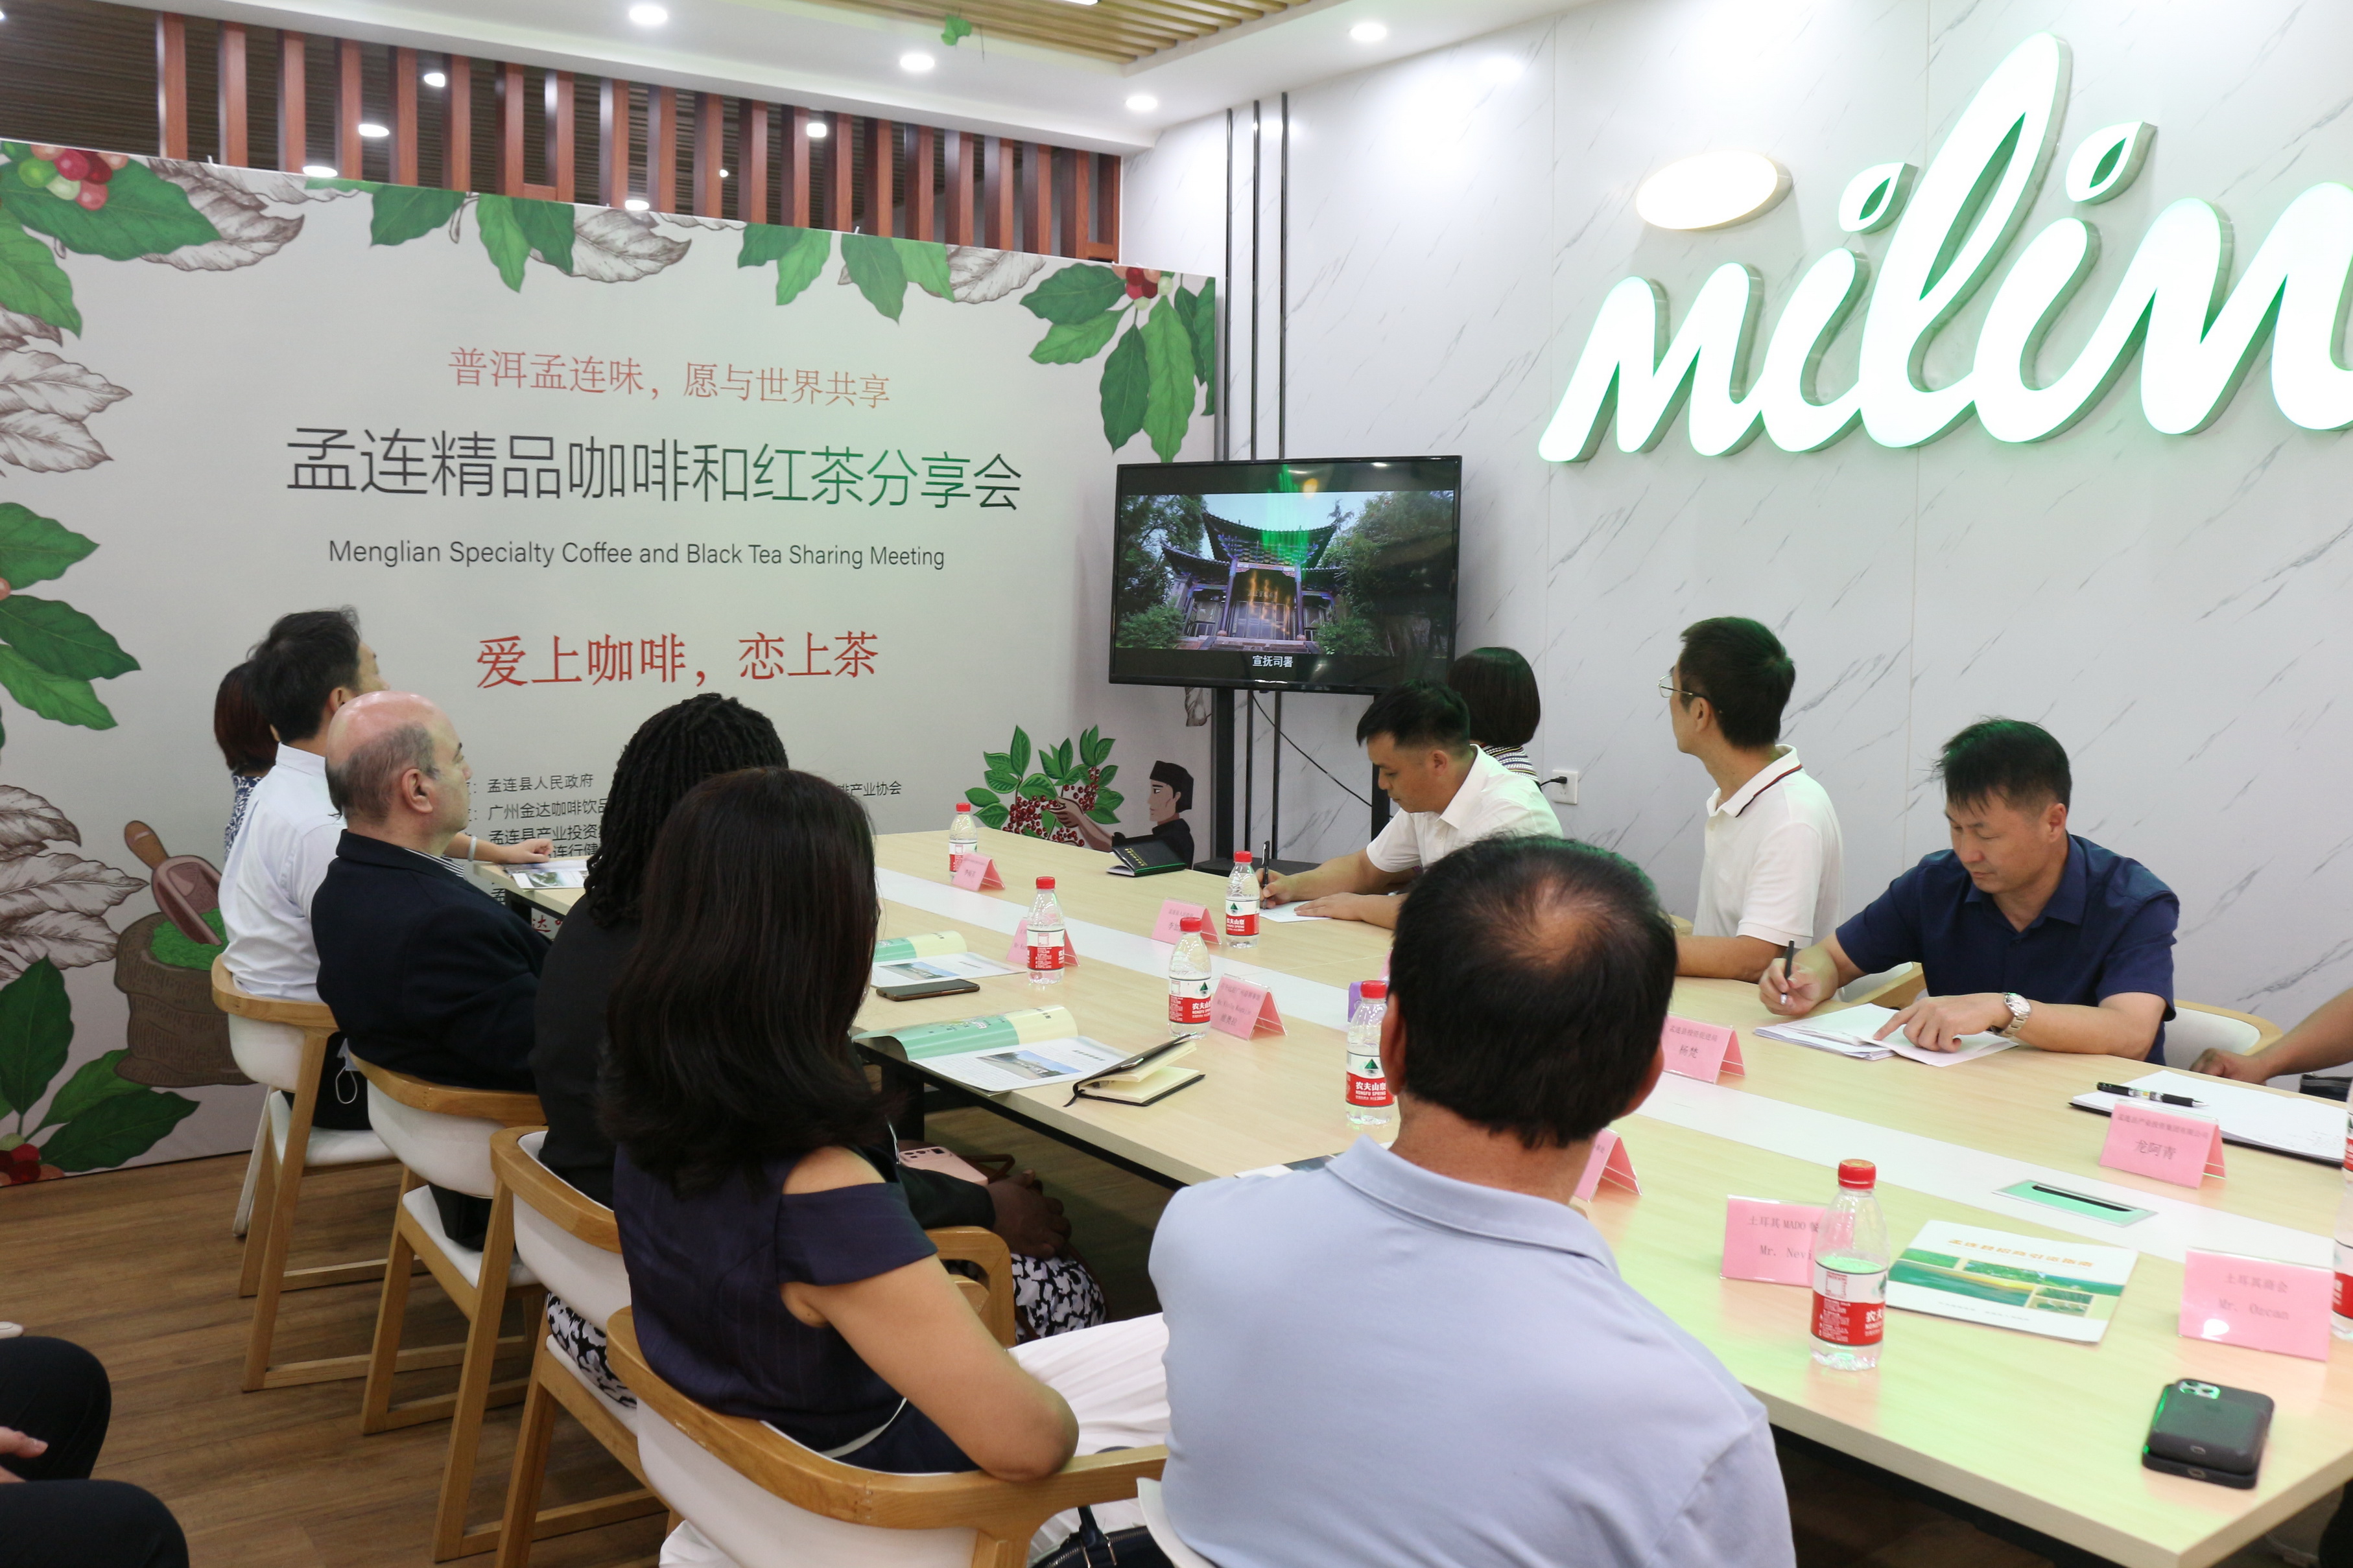 孟连精品咖啡和红茶分享会在广州隆重举行